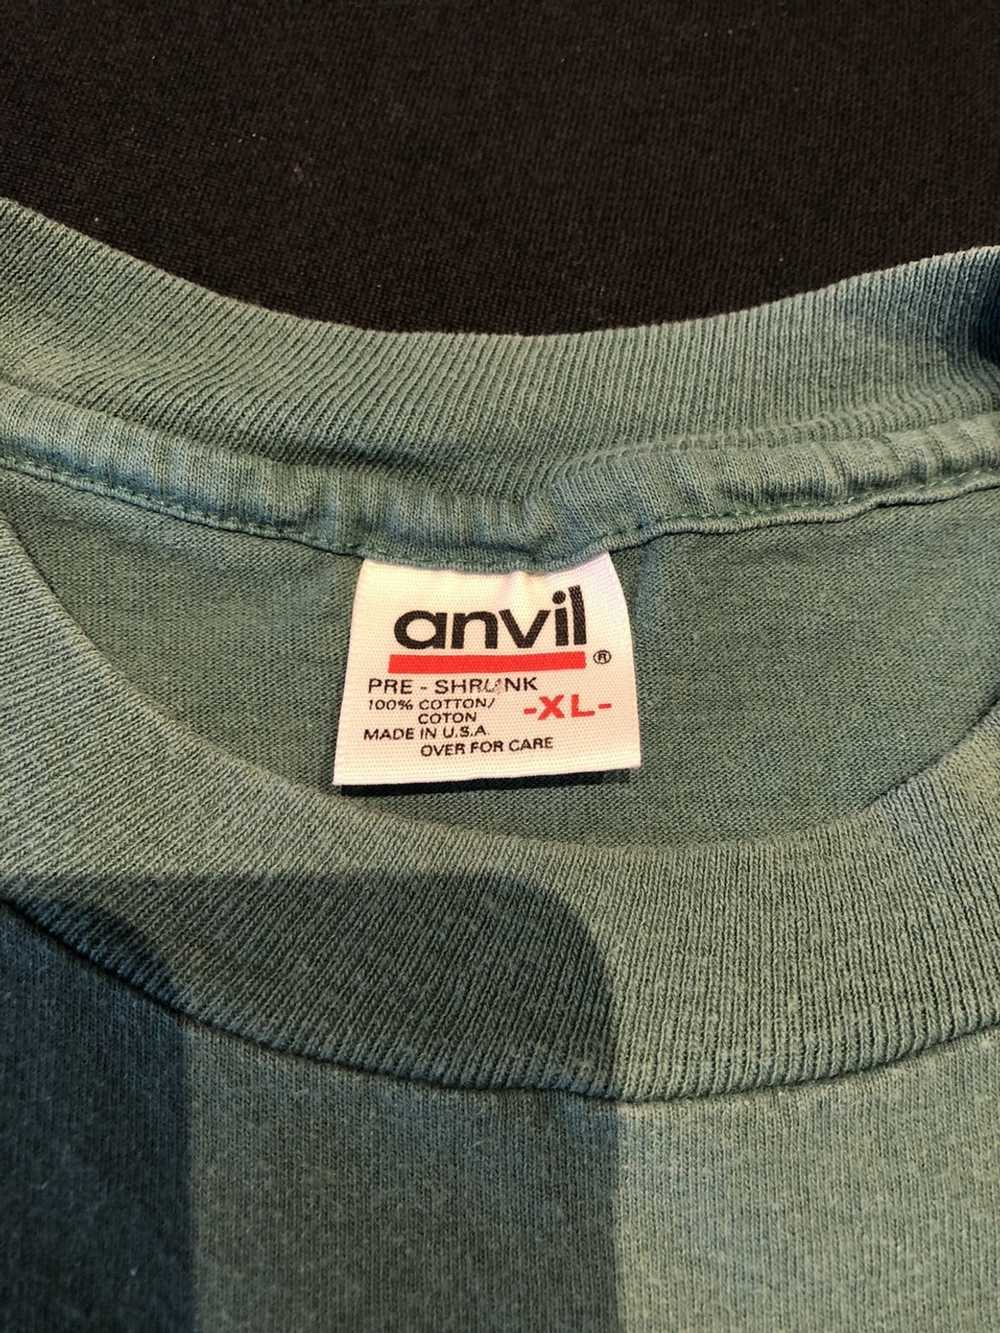 Anvil × Vintage Vintage Key Largo t-shirt - image 4